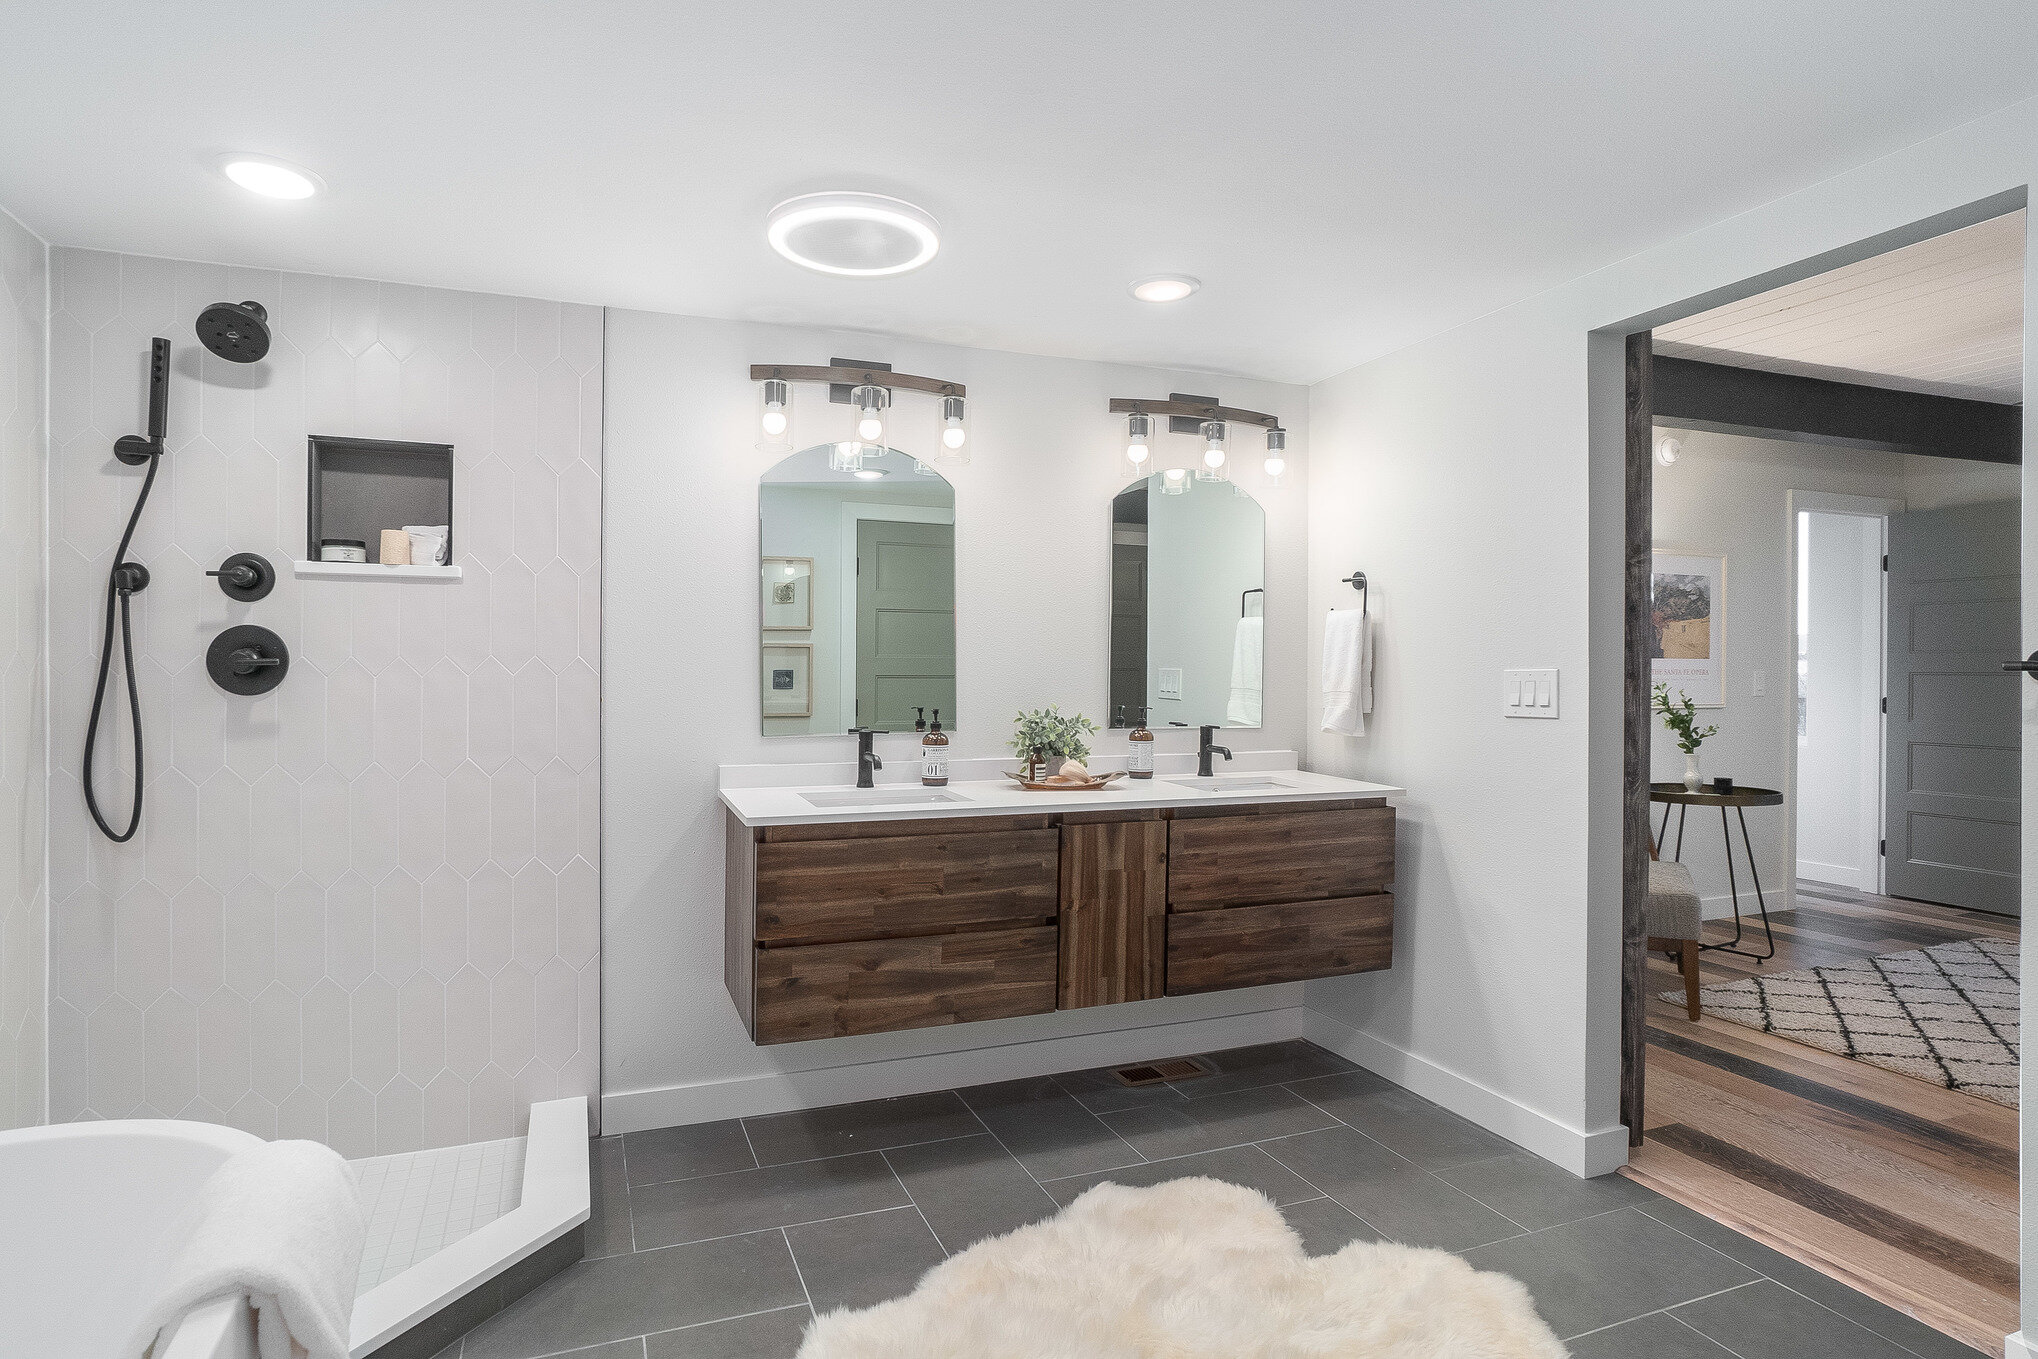 Floating double vanity in large owner's suite bathroom